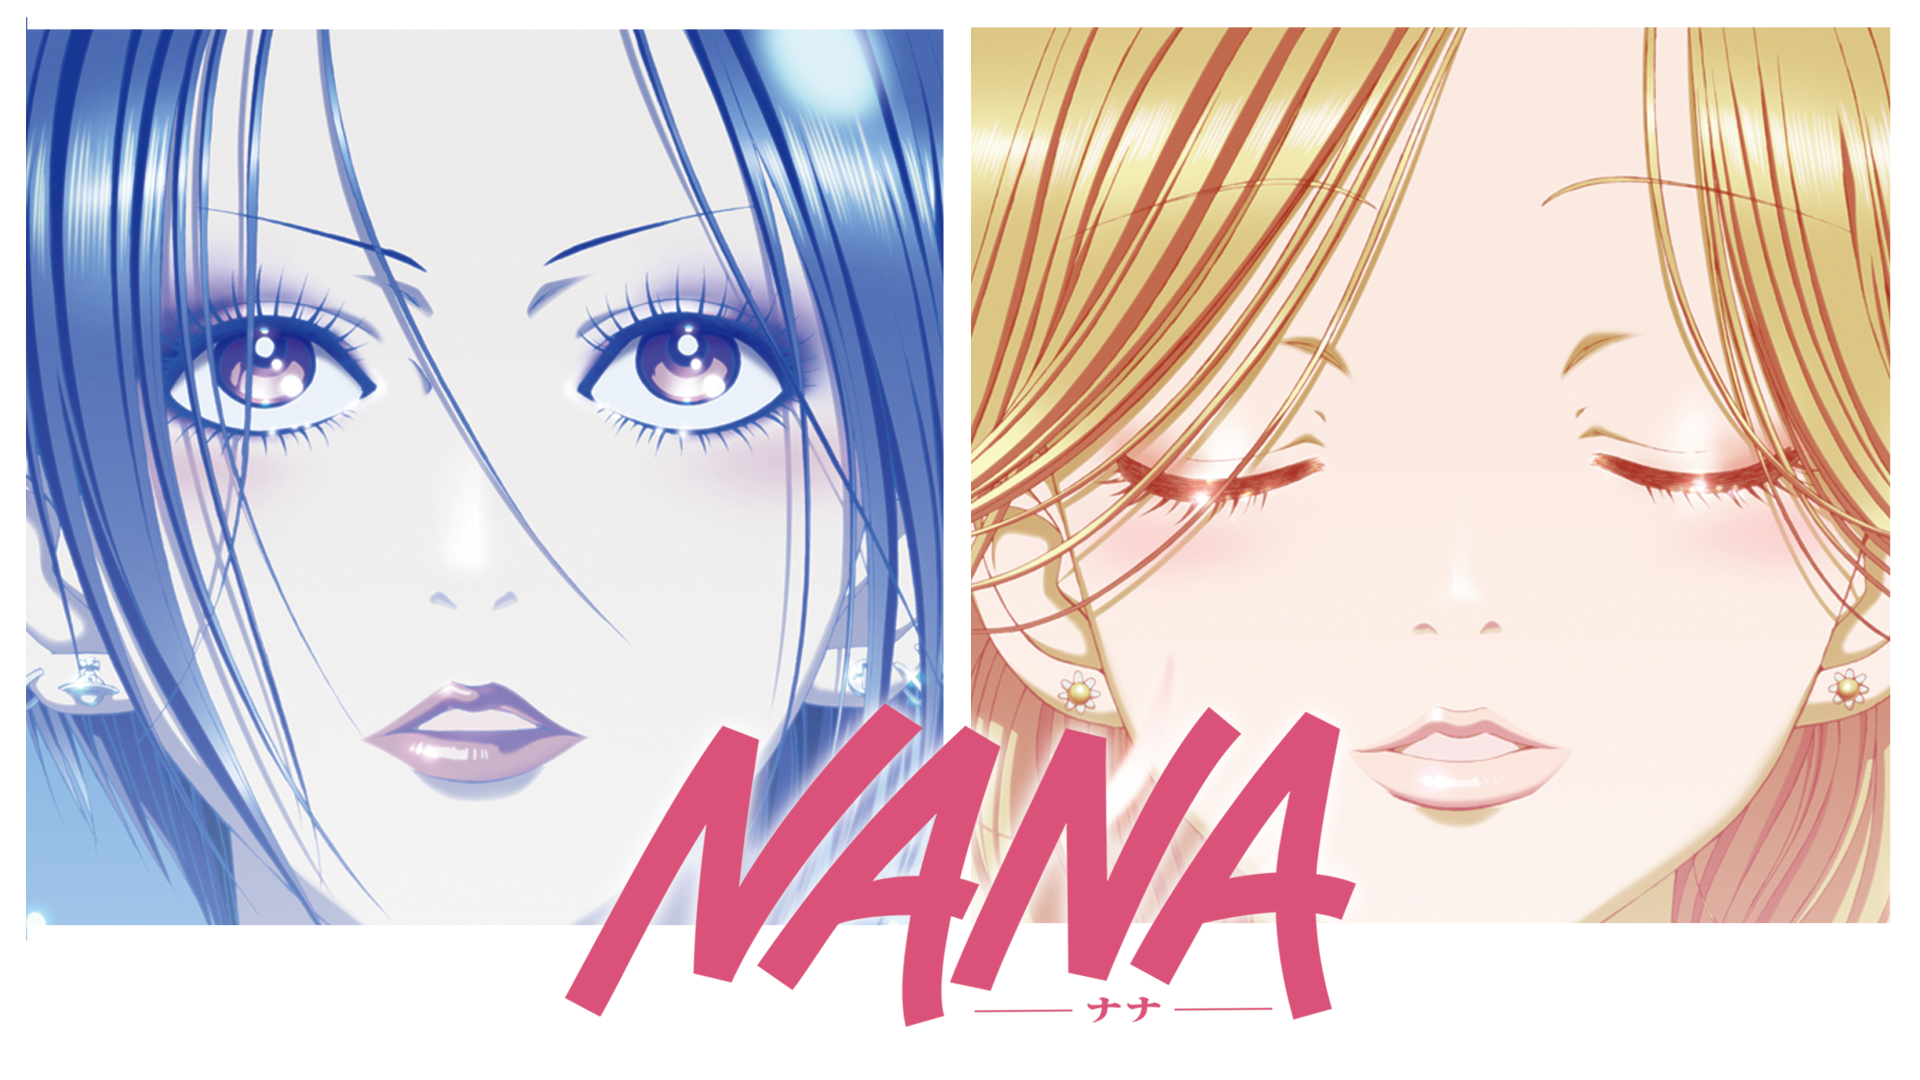 NANA −ナナ−の動画 - NANA 2 −ナナ−